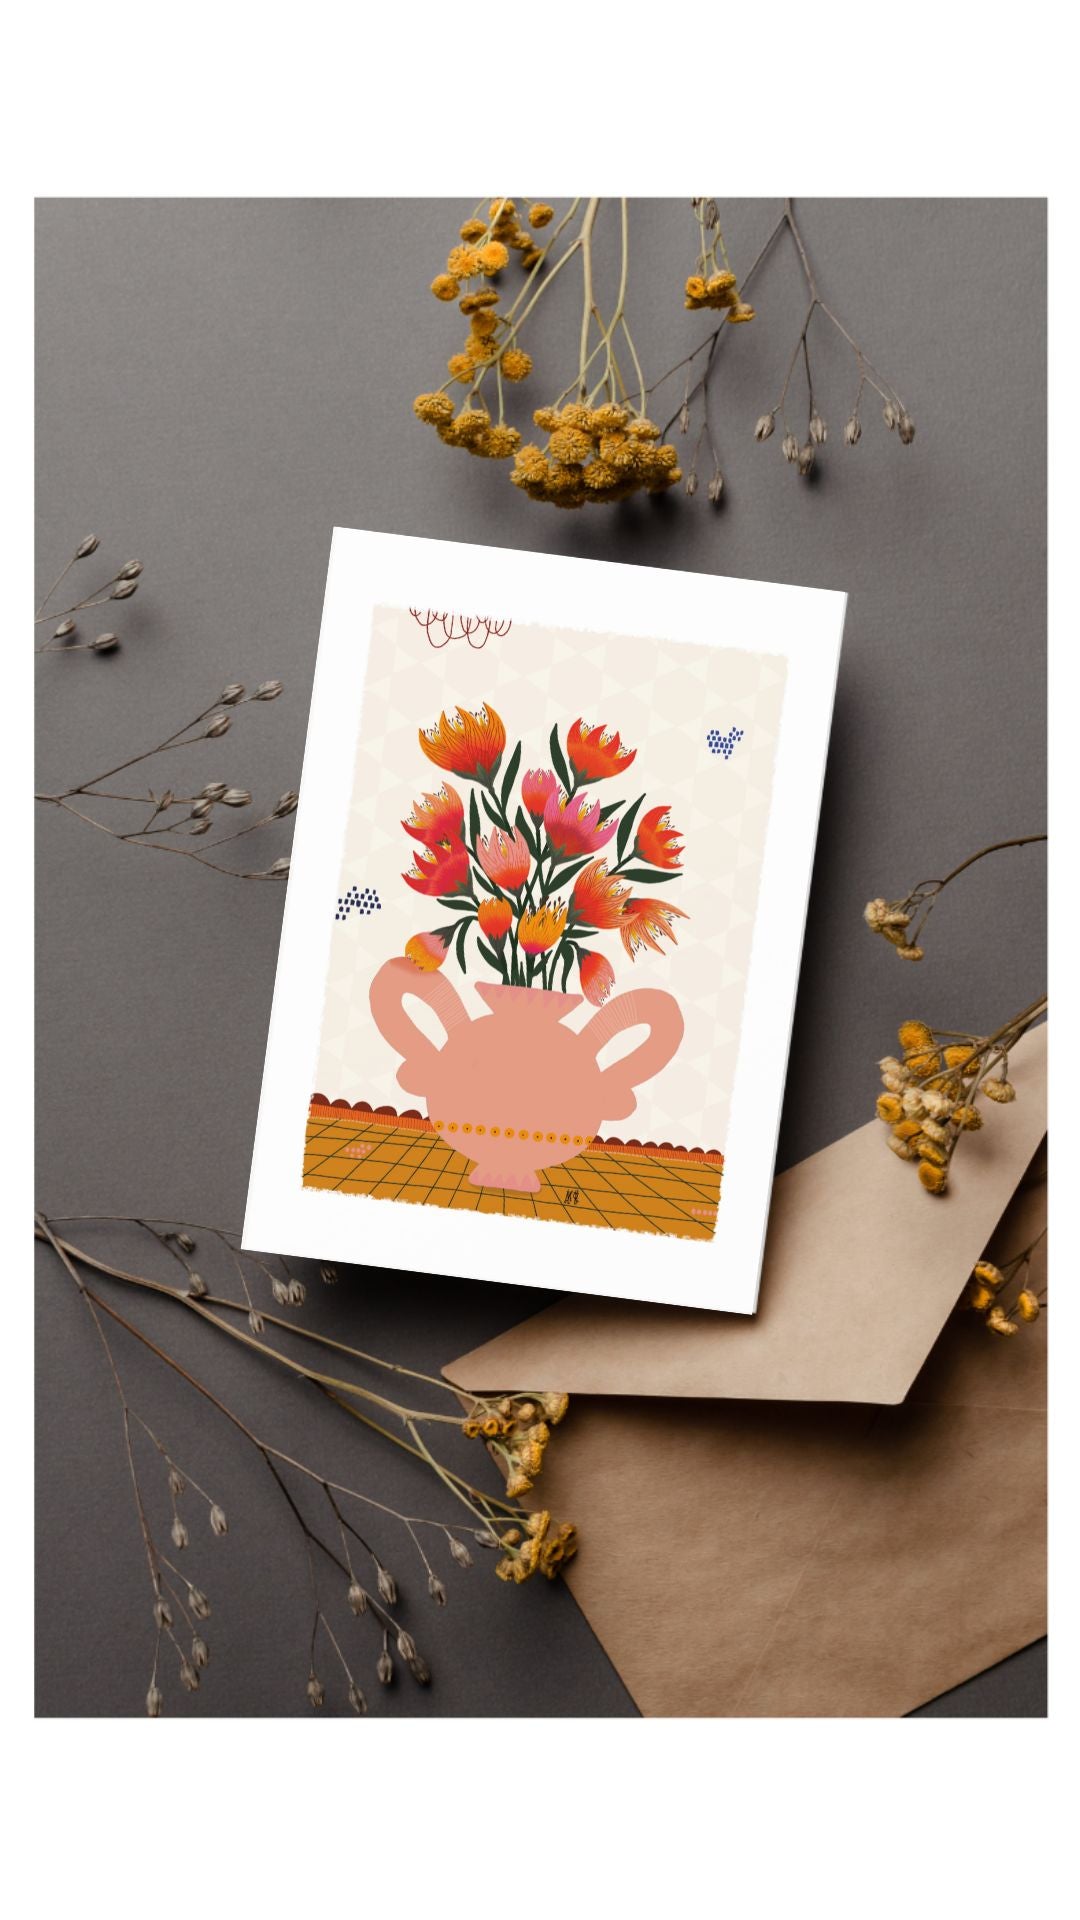 Carte postale format A6 avec son enveloppe. Carte qui représente un bourque de fleurs rouges orangées dans un vase saumon de forme ronde avec deux grandes anses